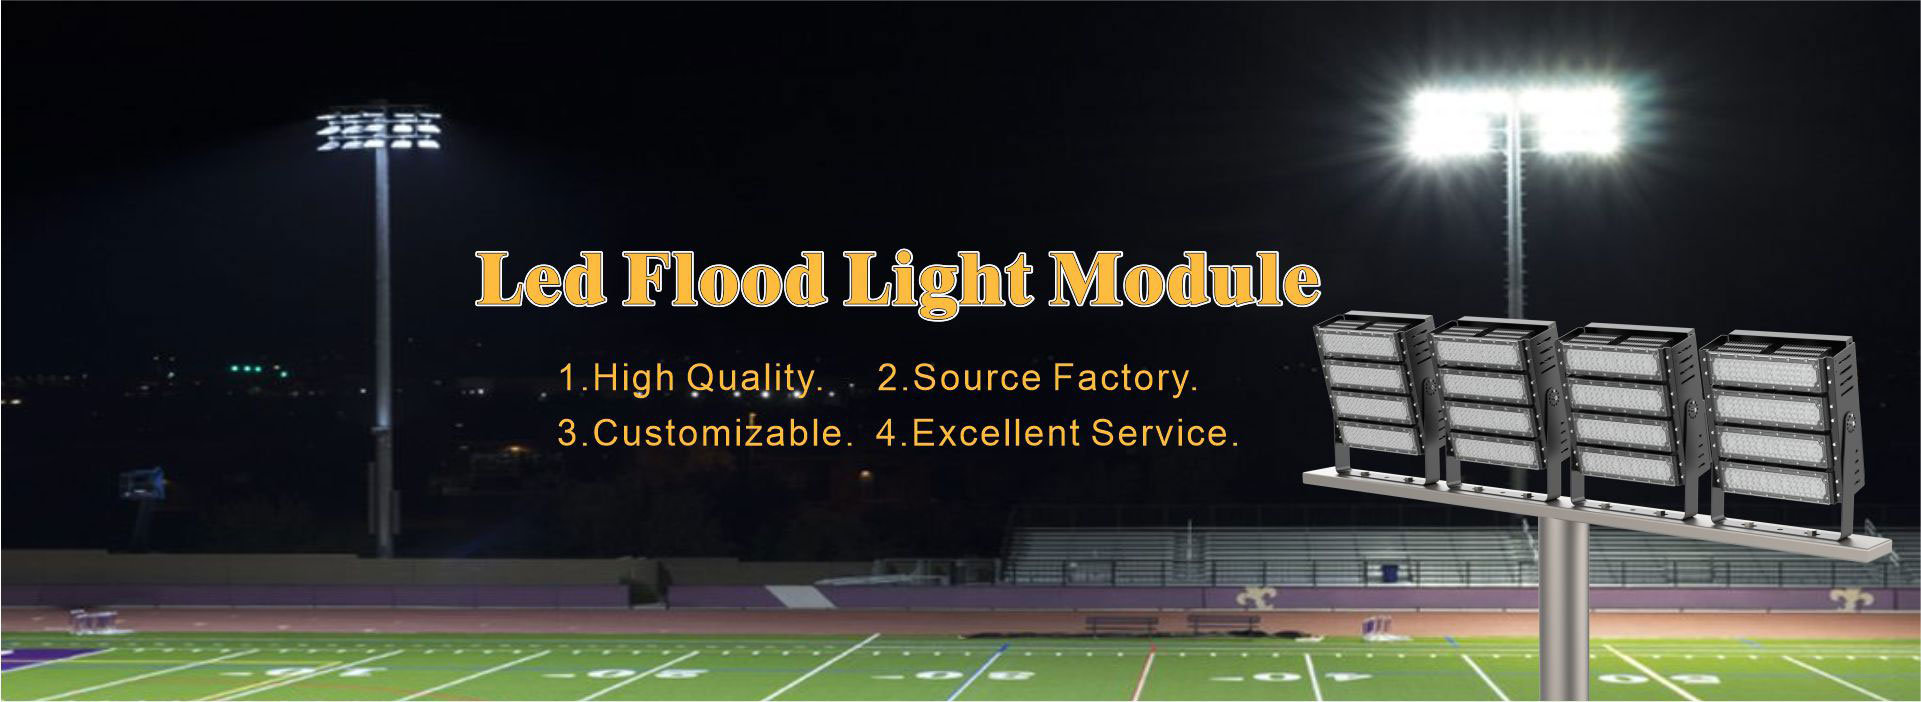 led football field lights